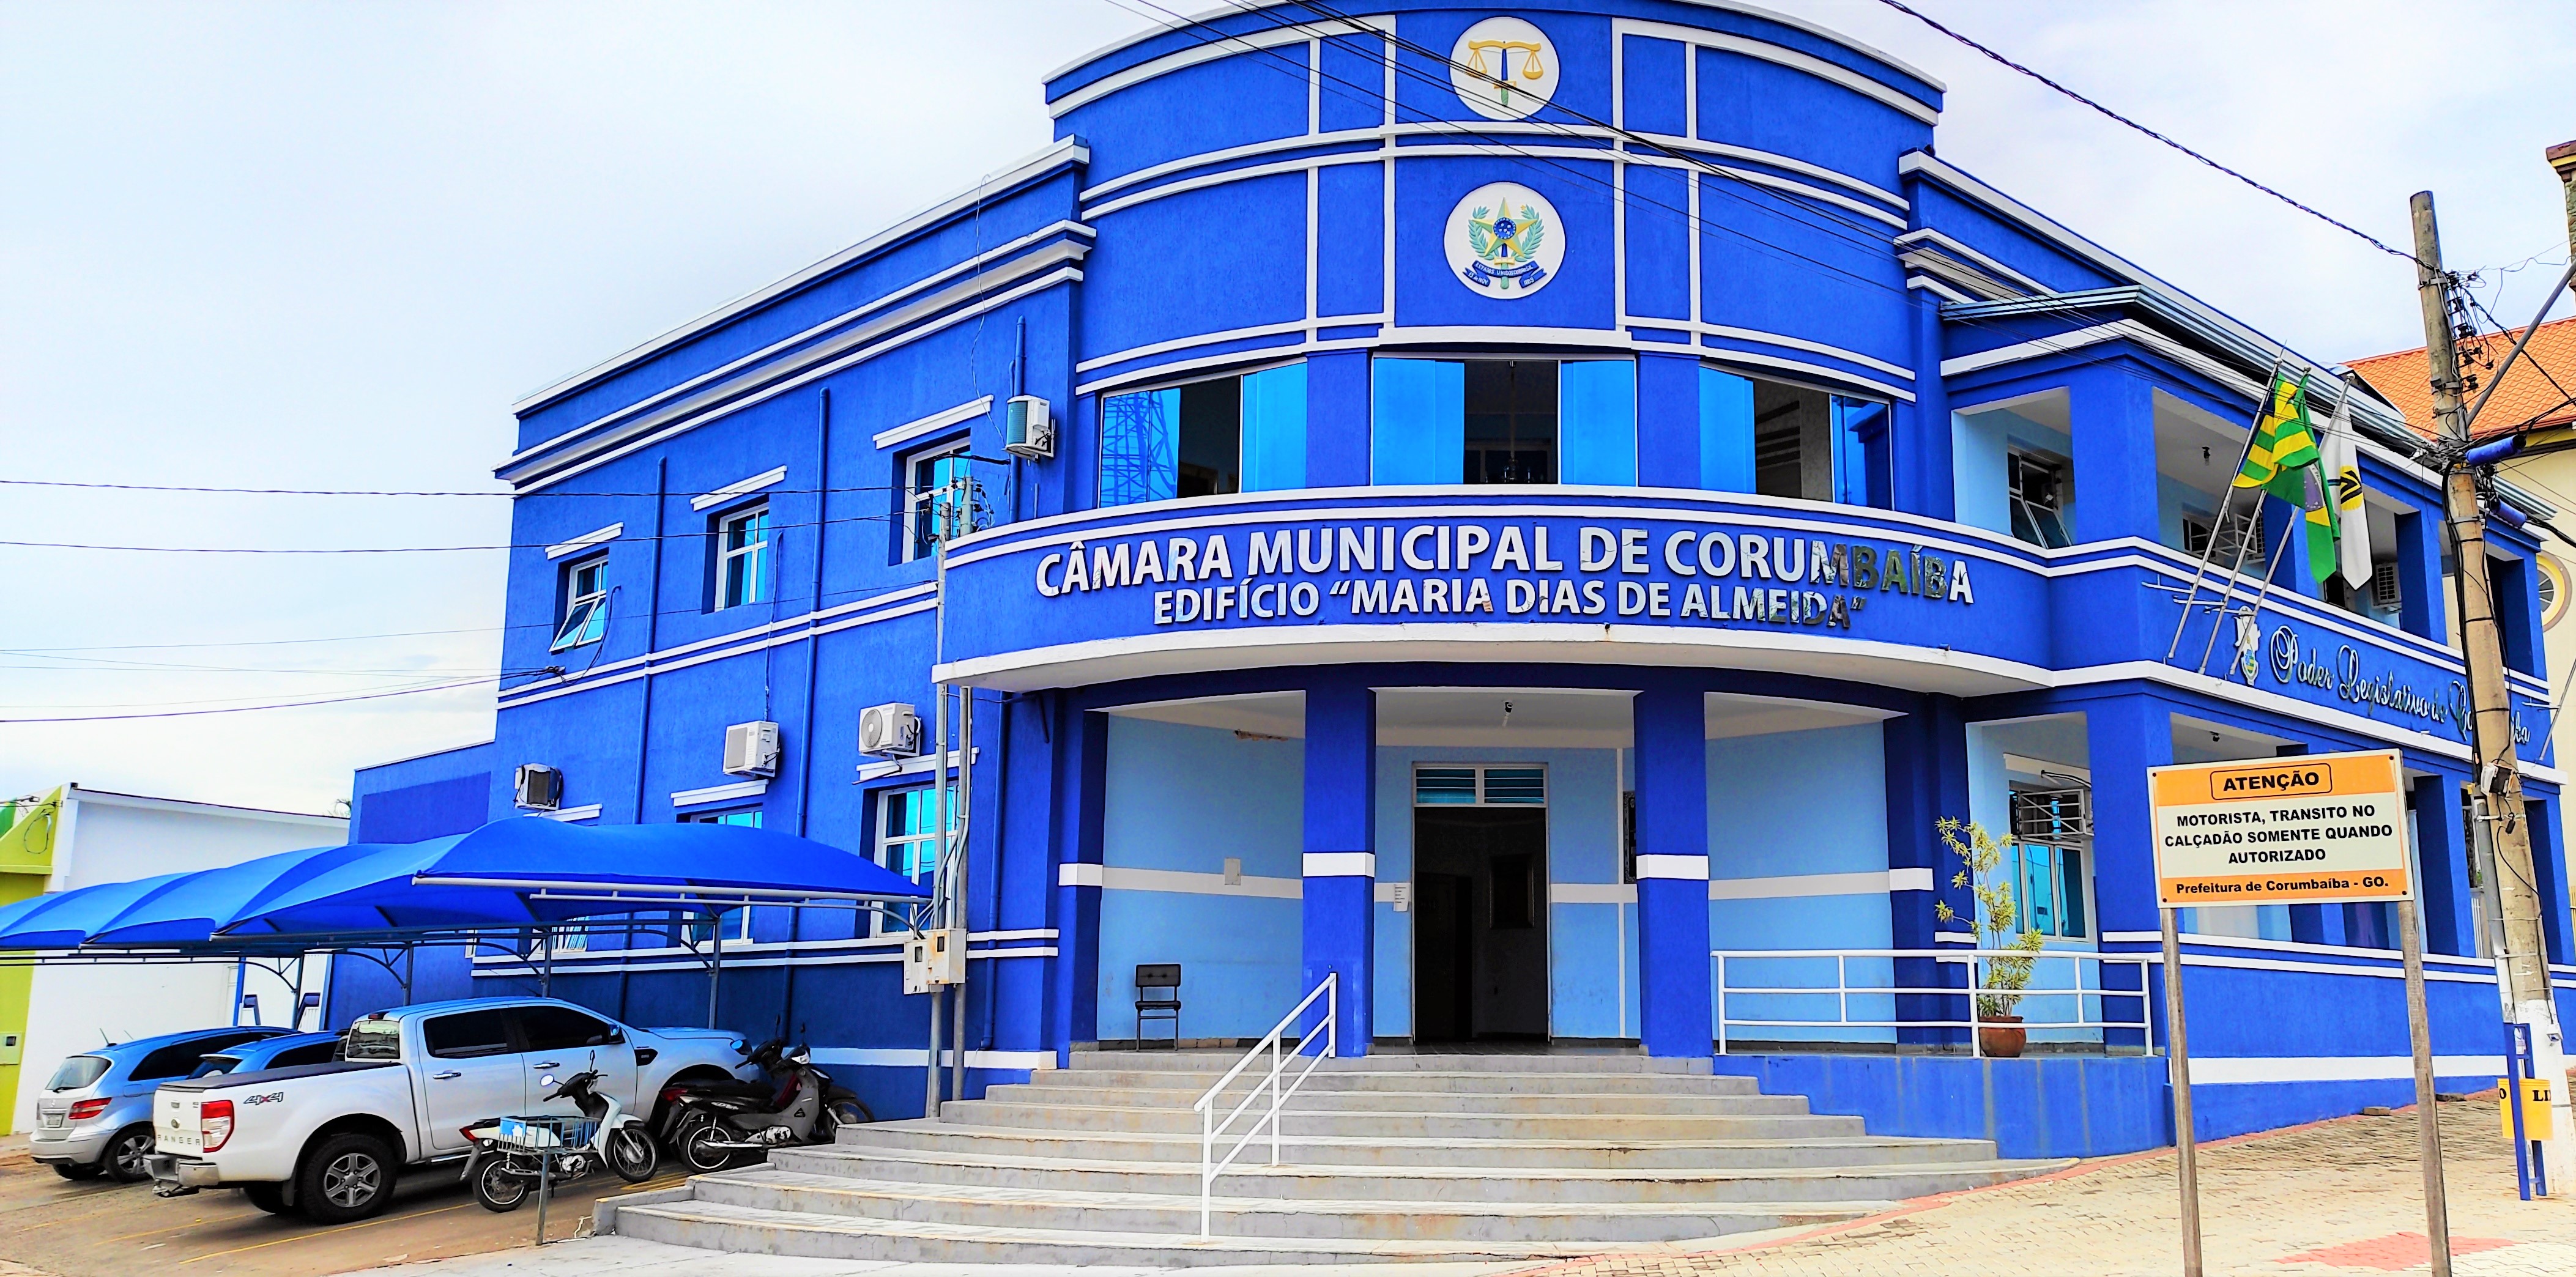 Camara Municipal de Corumbaiba Edificio Maria Dias de Almeida